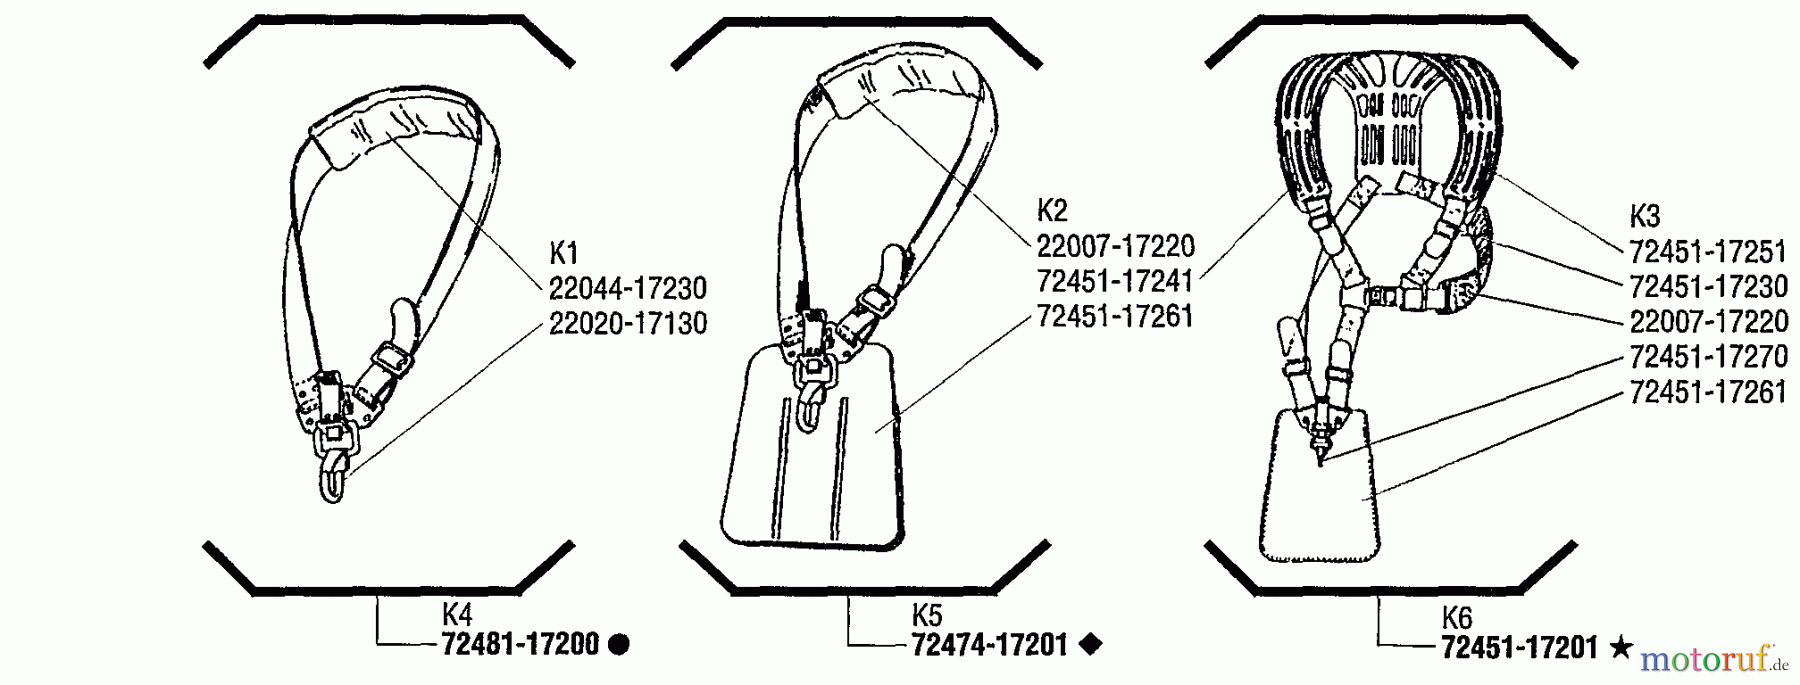  Shindaiwa Trimmer, Faden / Bürste T250 - Shindaiwa String Trimmer Shoulder Harness